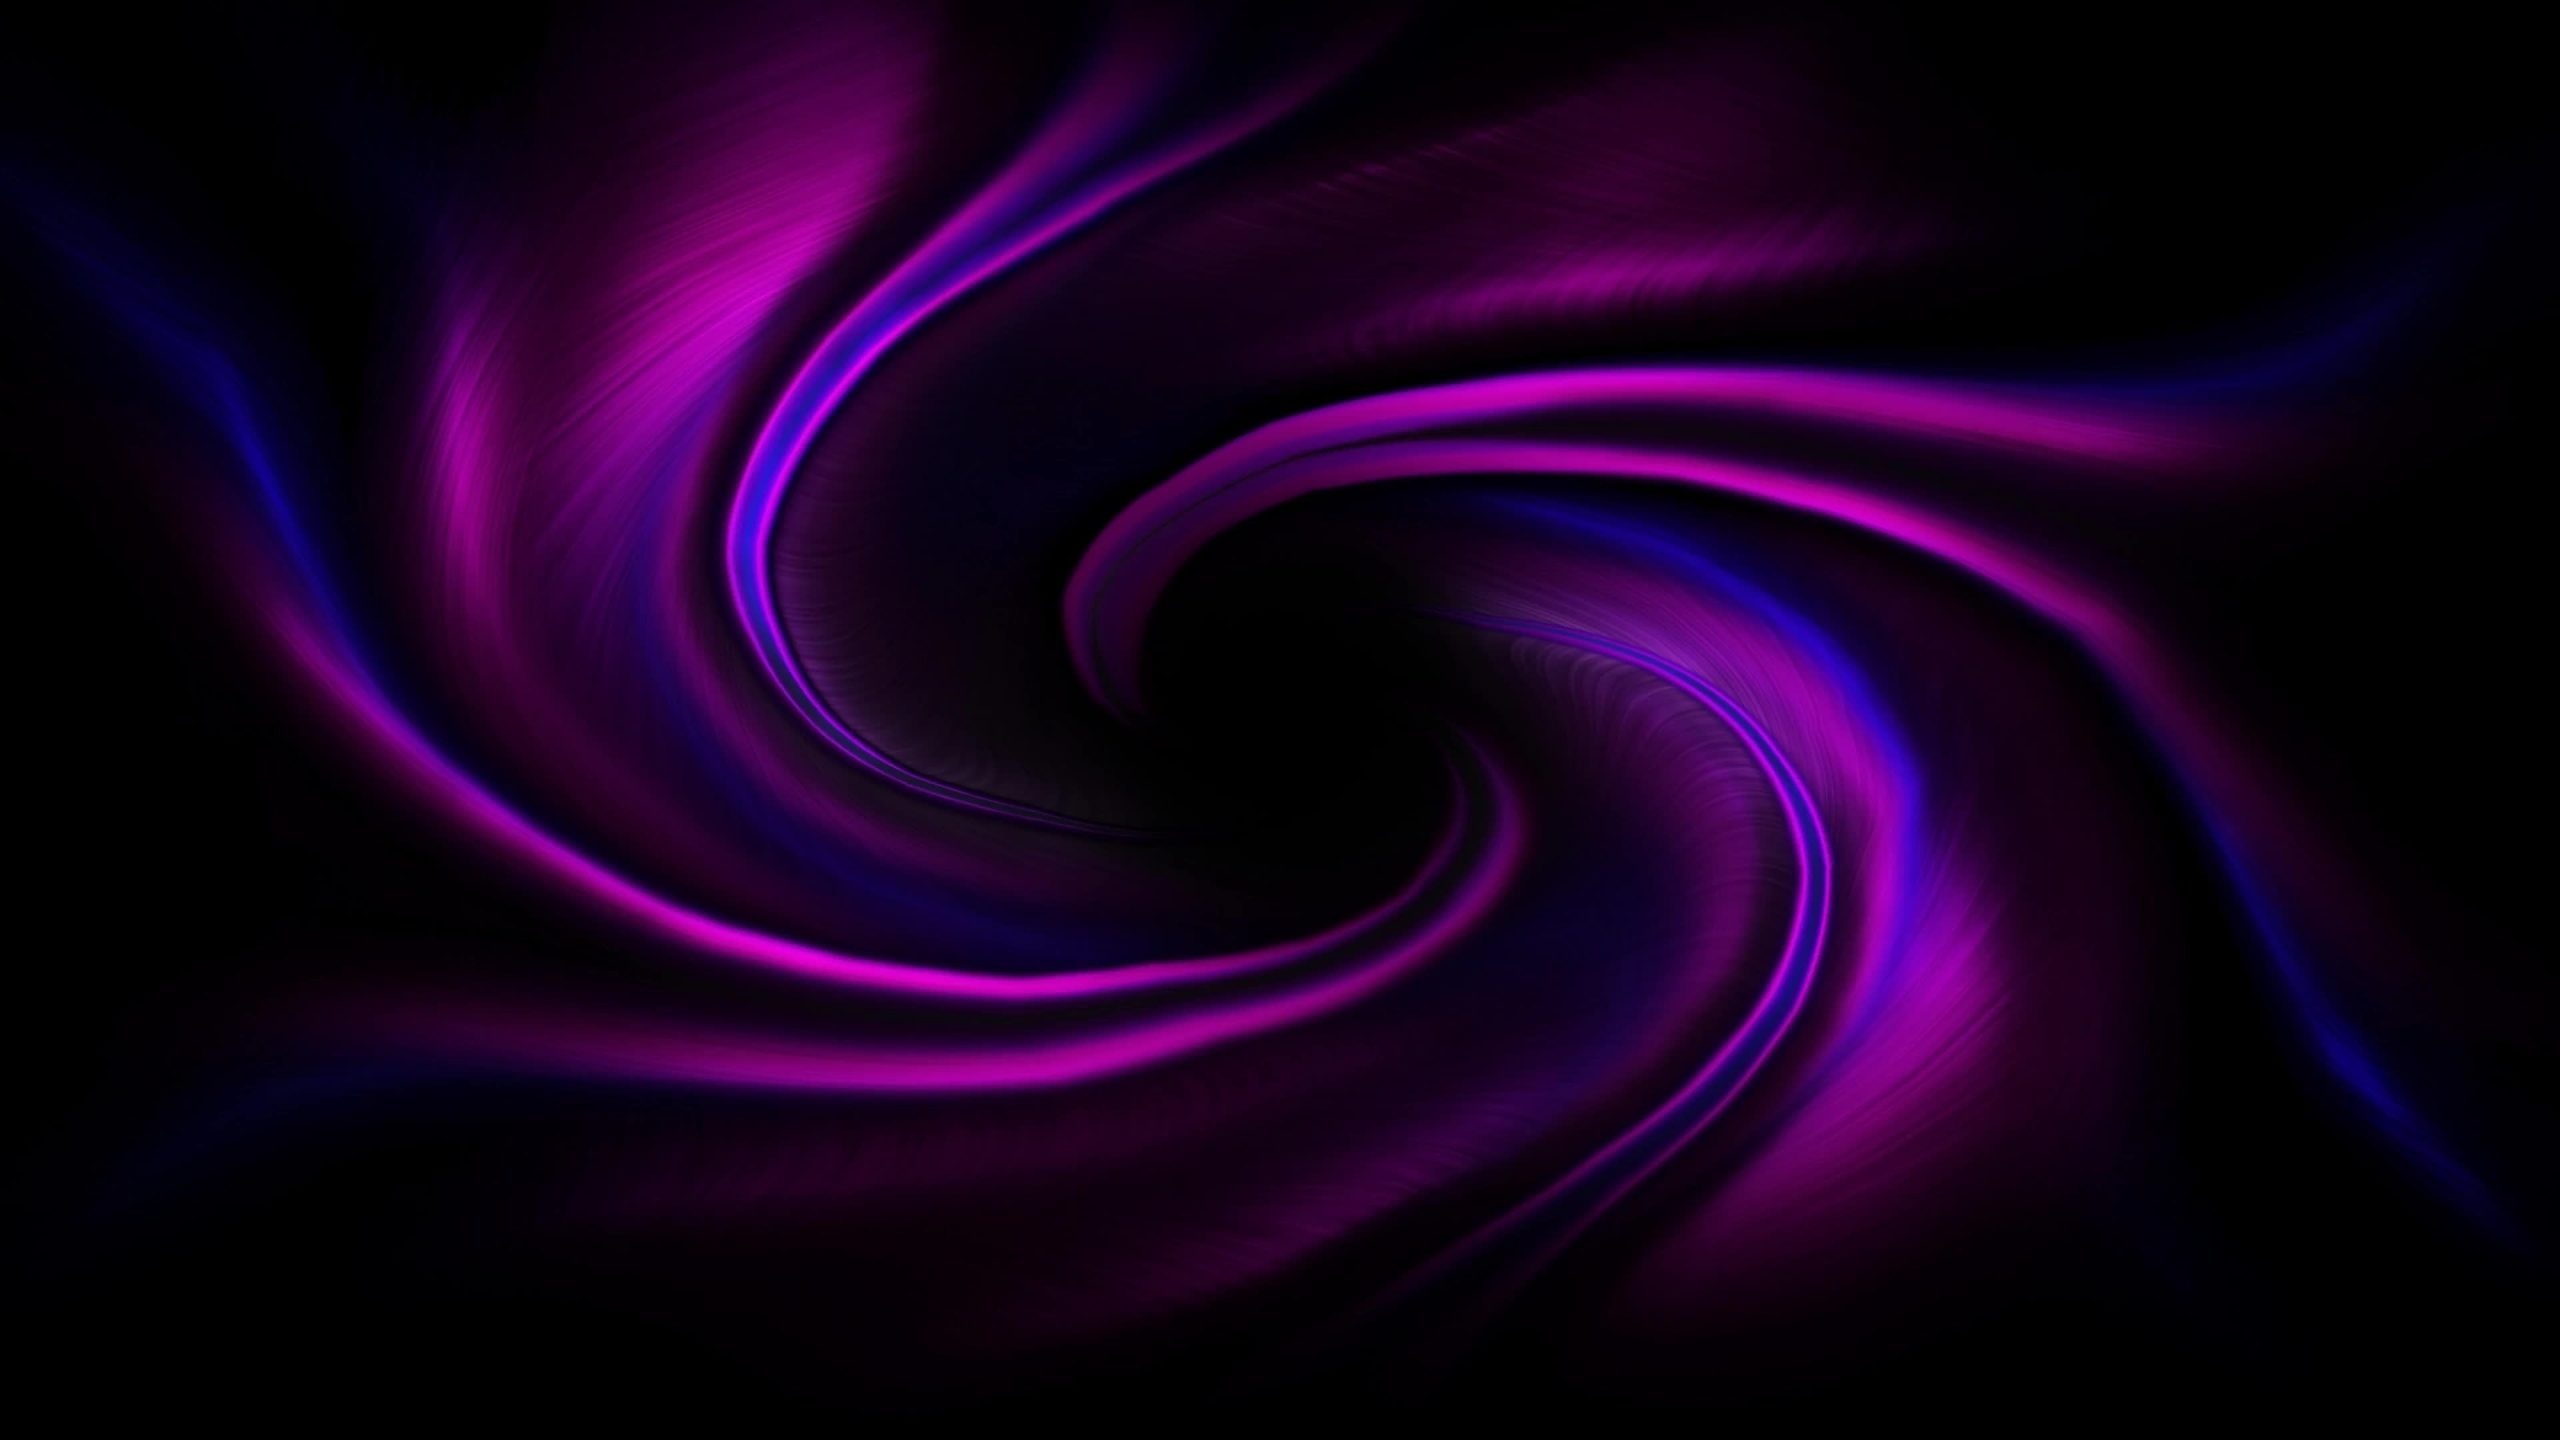 Swirl, Purple swirl wallpapers, Top free backgrounds, 2560x1440 HD Desktop